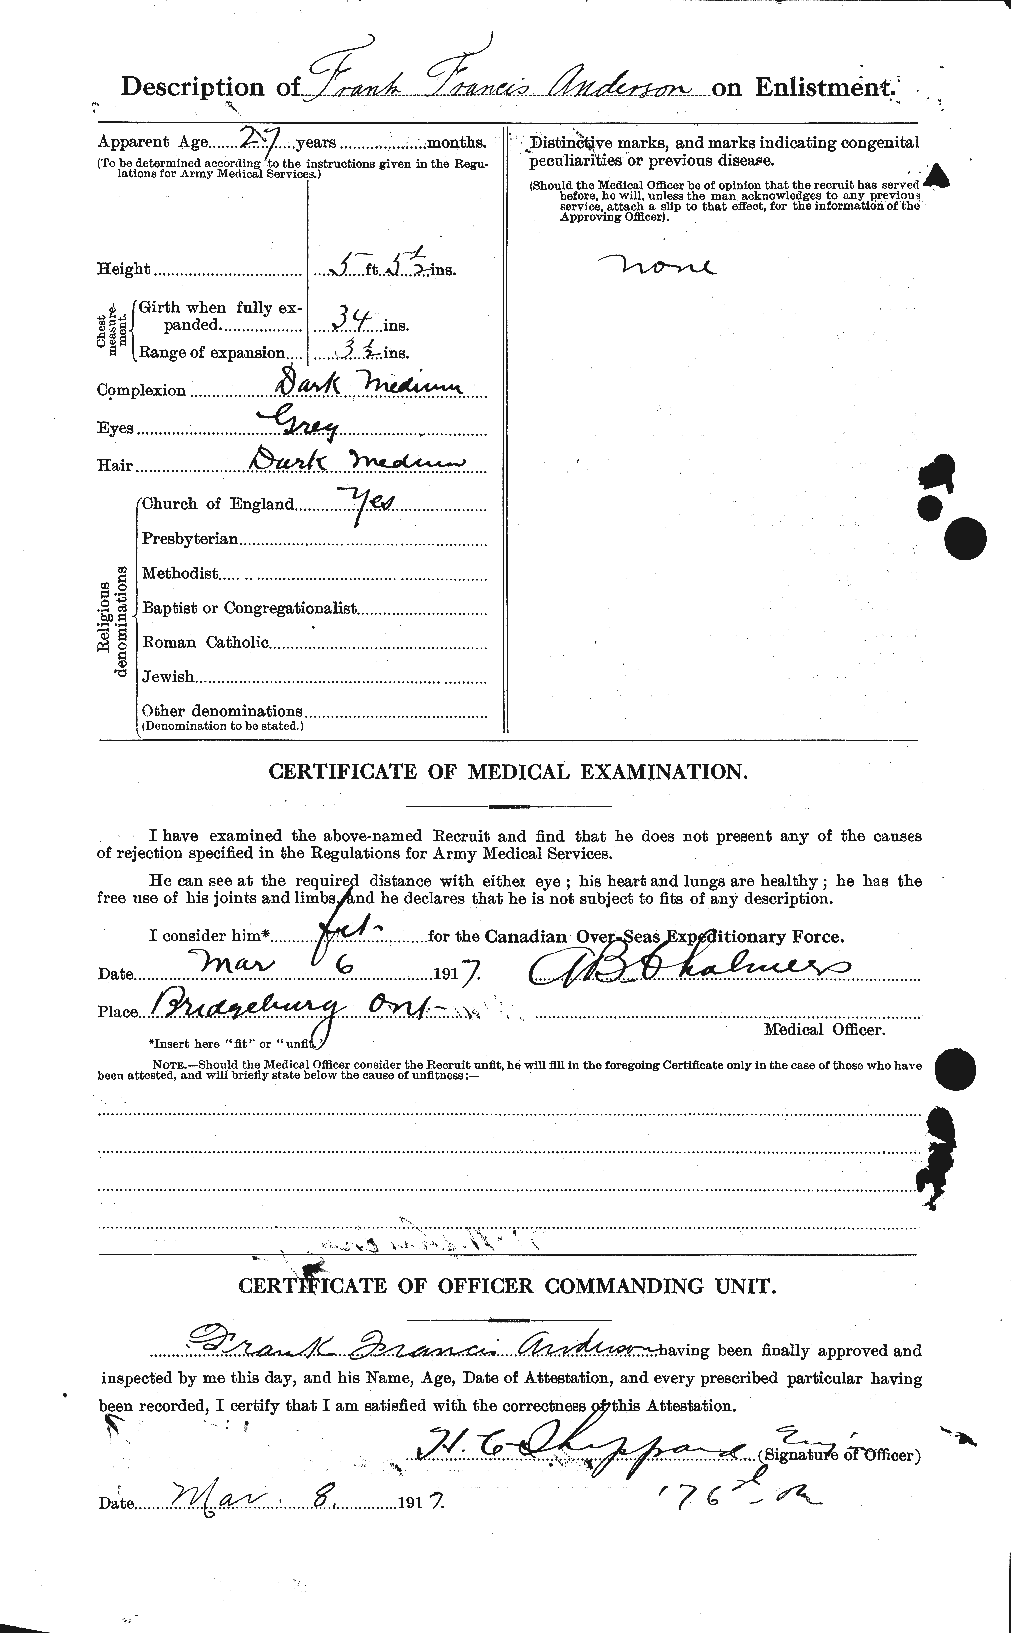 Dossiers du Personnel de la Première Guerre mondiale - CEC 209849b